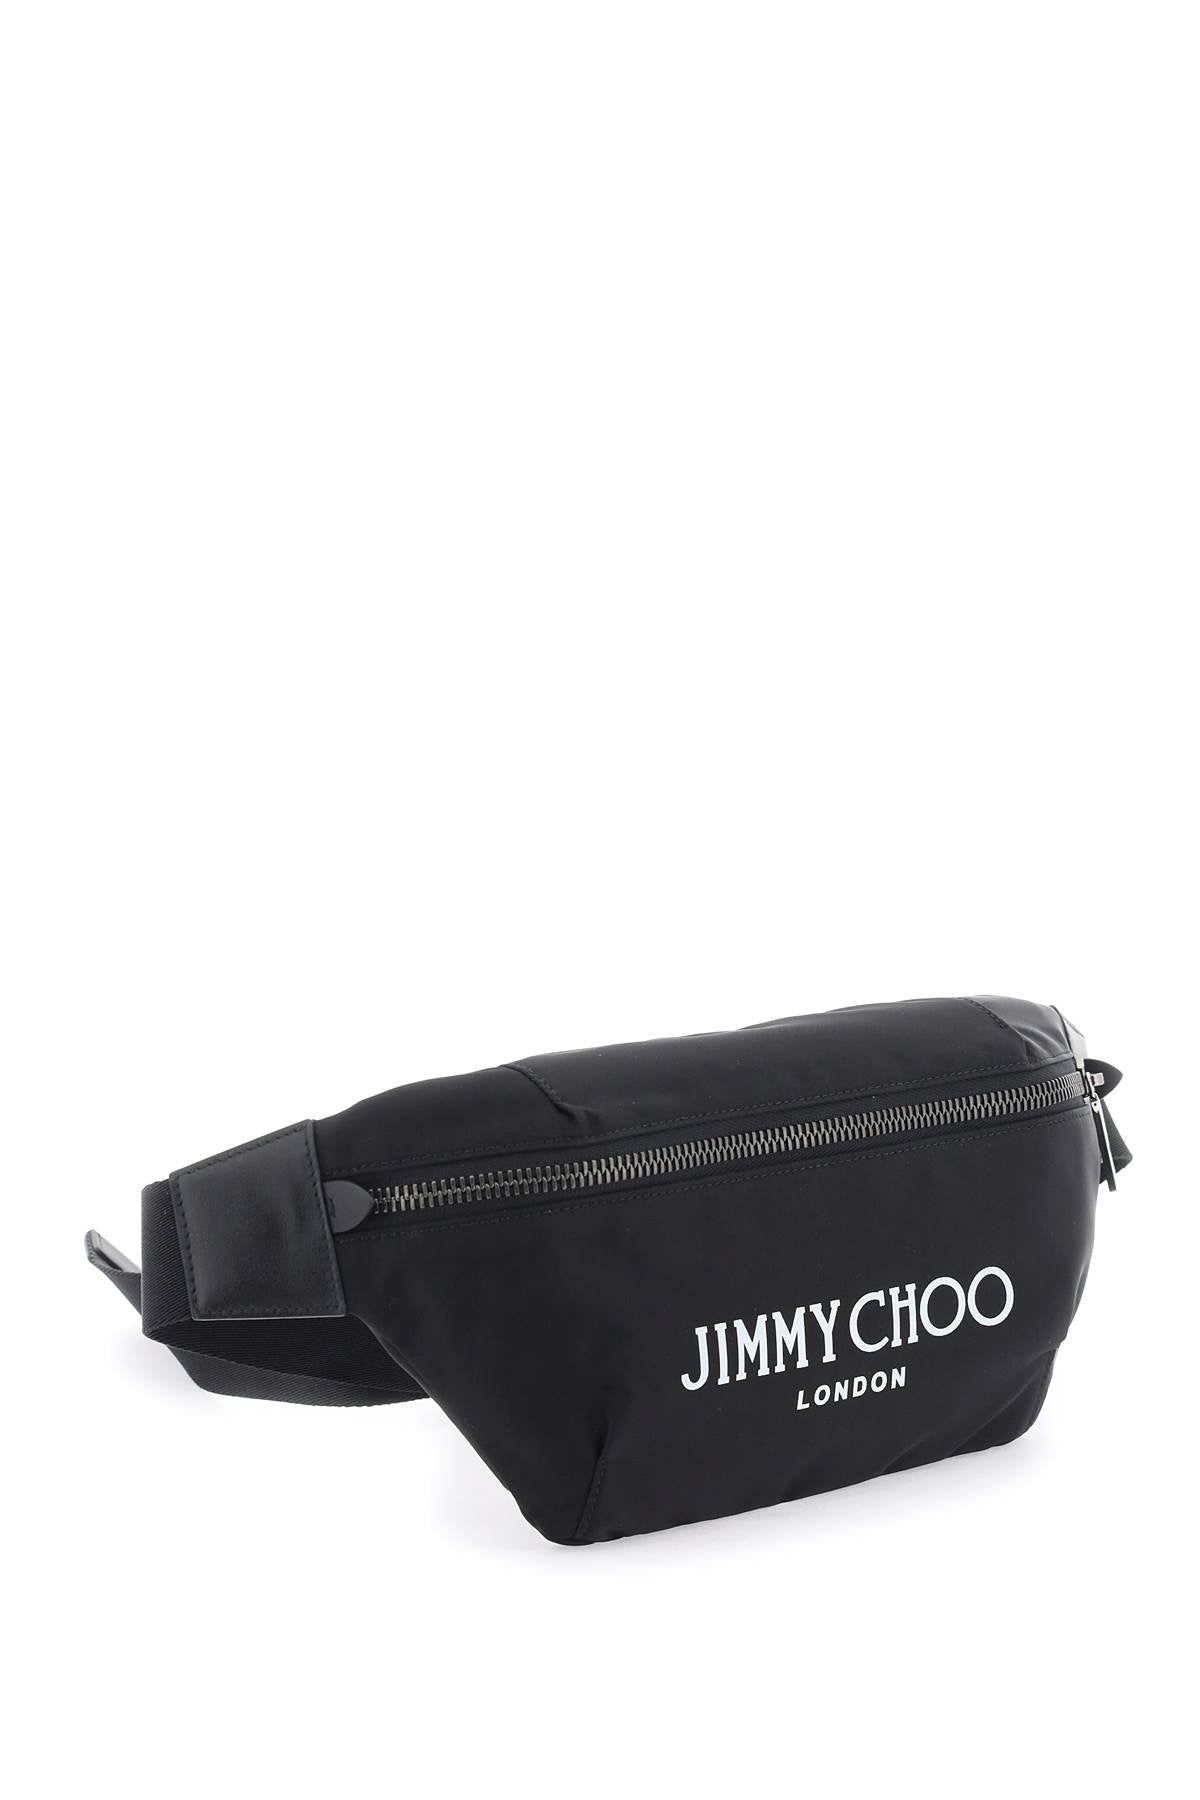 Jimmy choo finsley beltpack-2